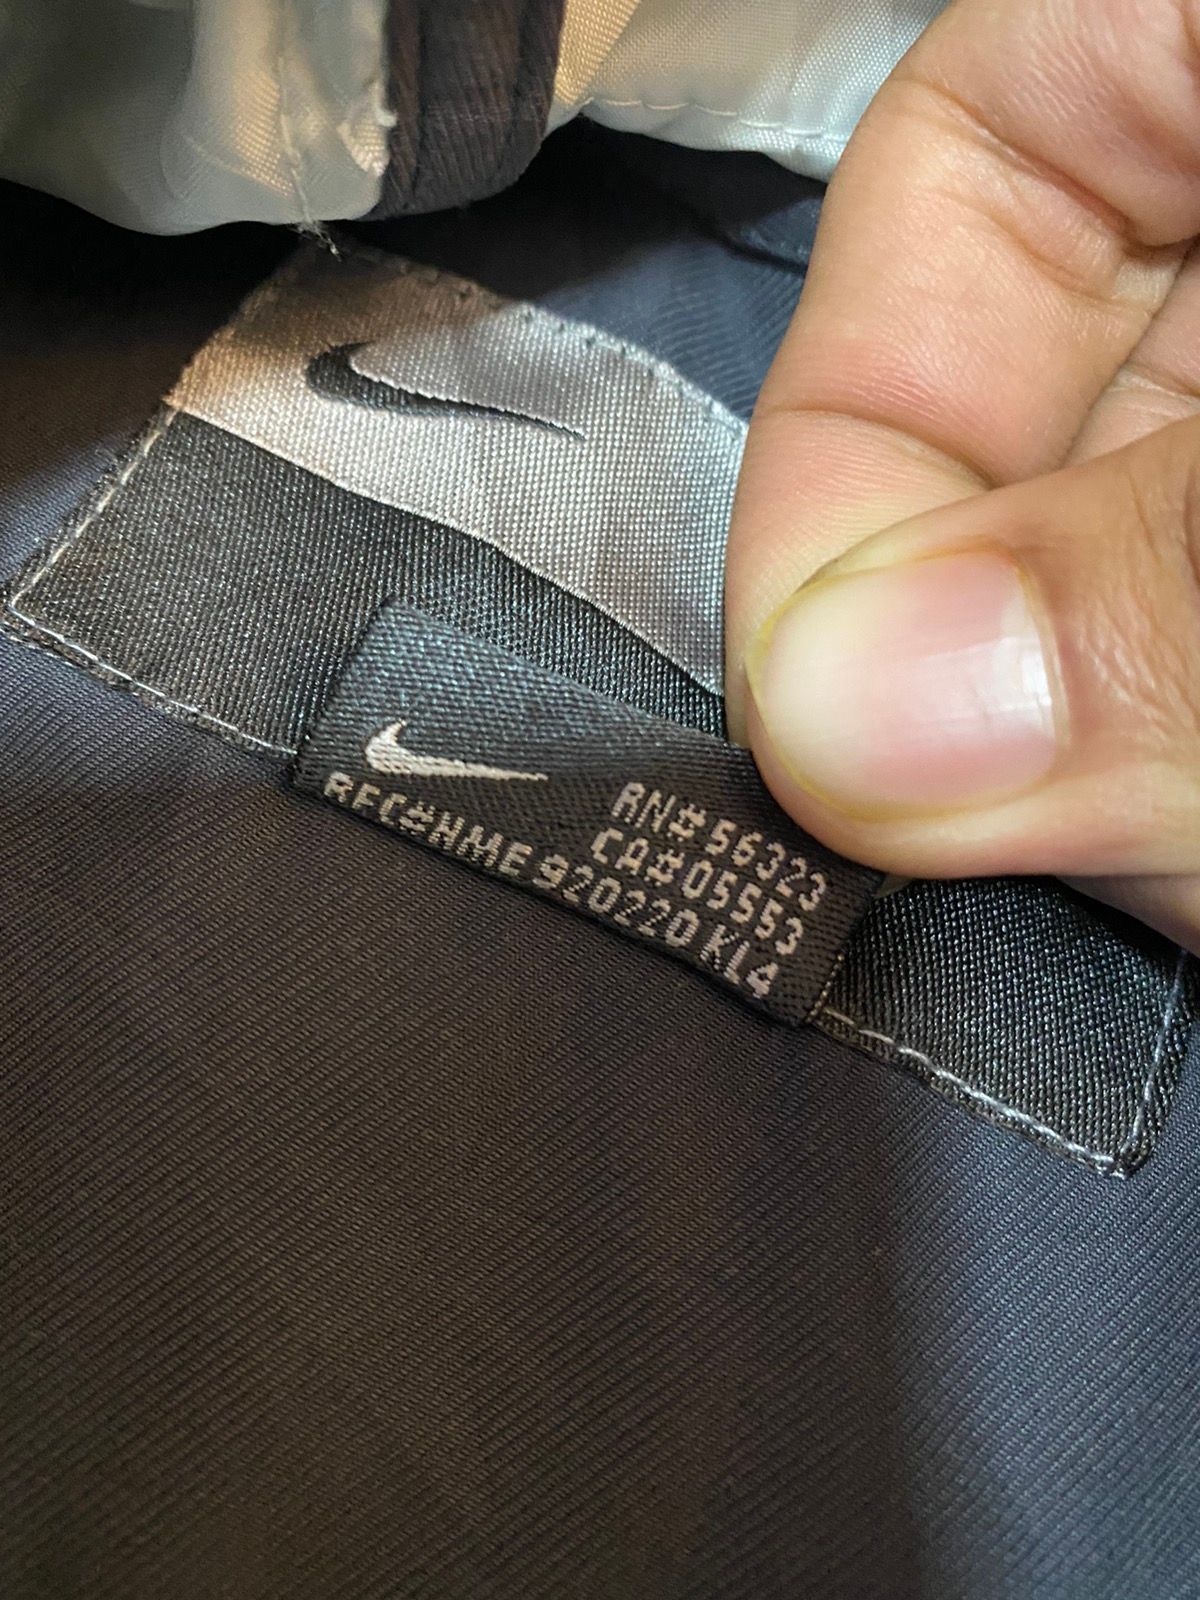 Nike Pullover Anorak Hoodie Jacket Nice Design - 10